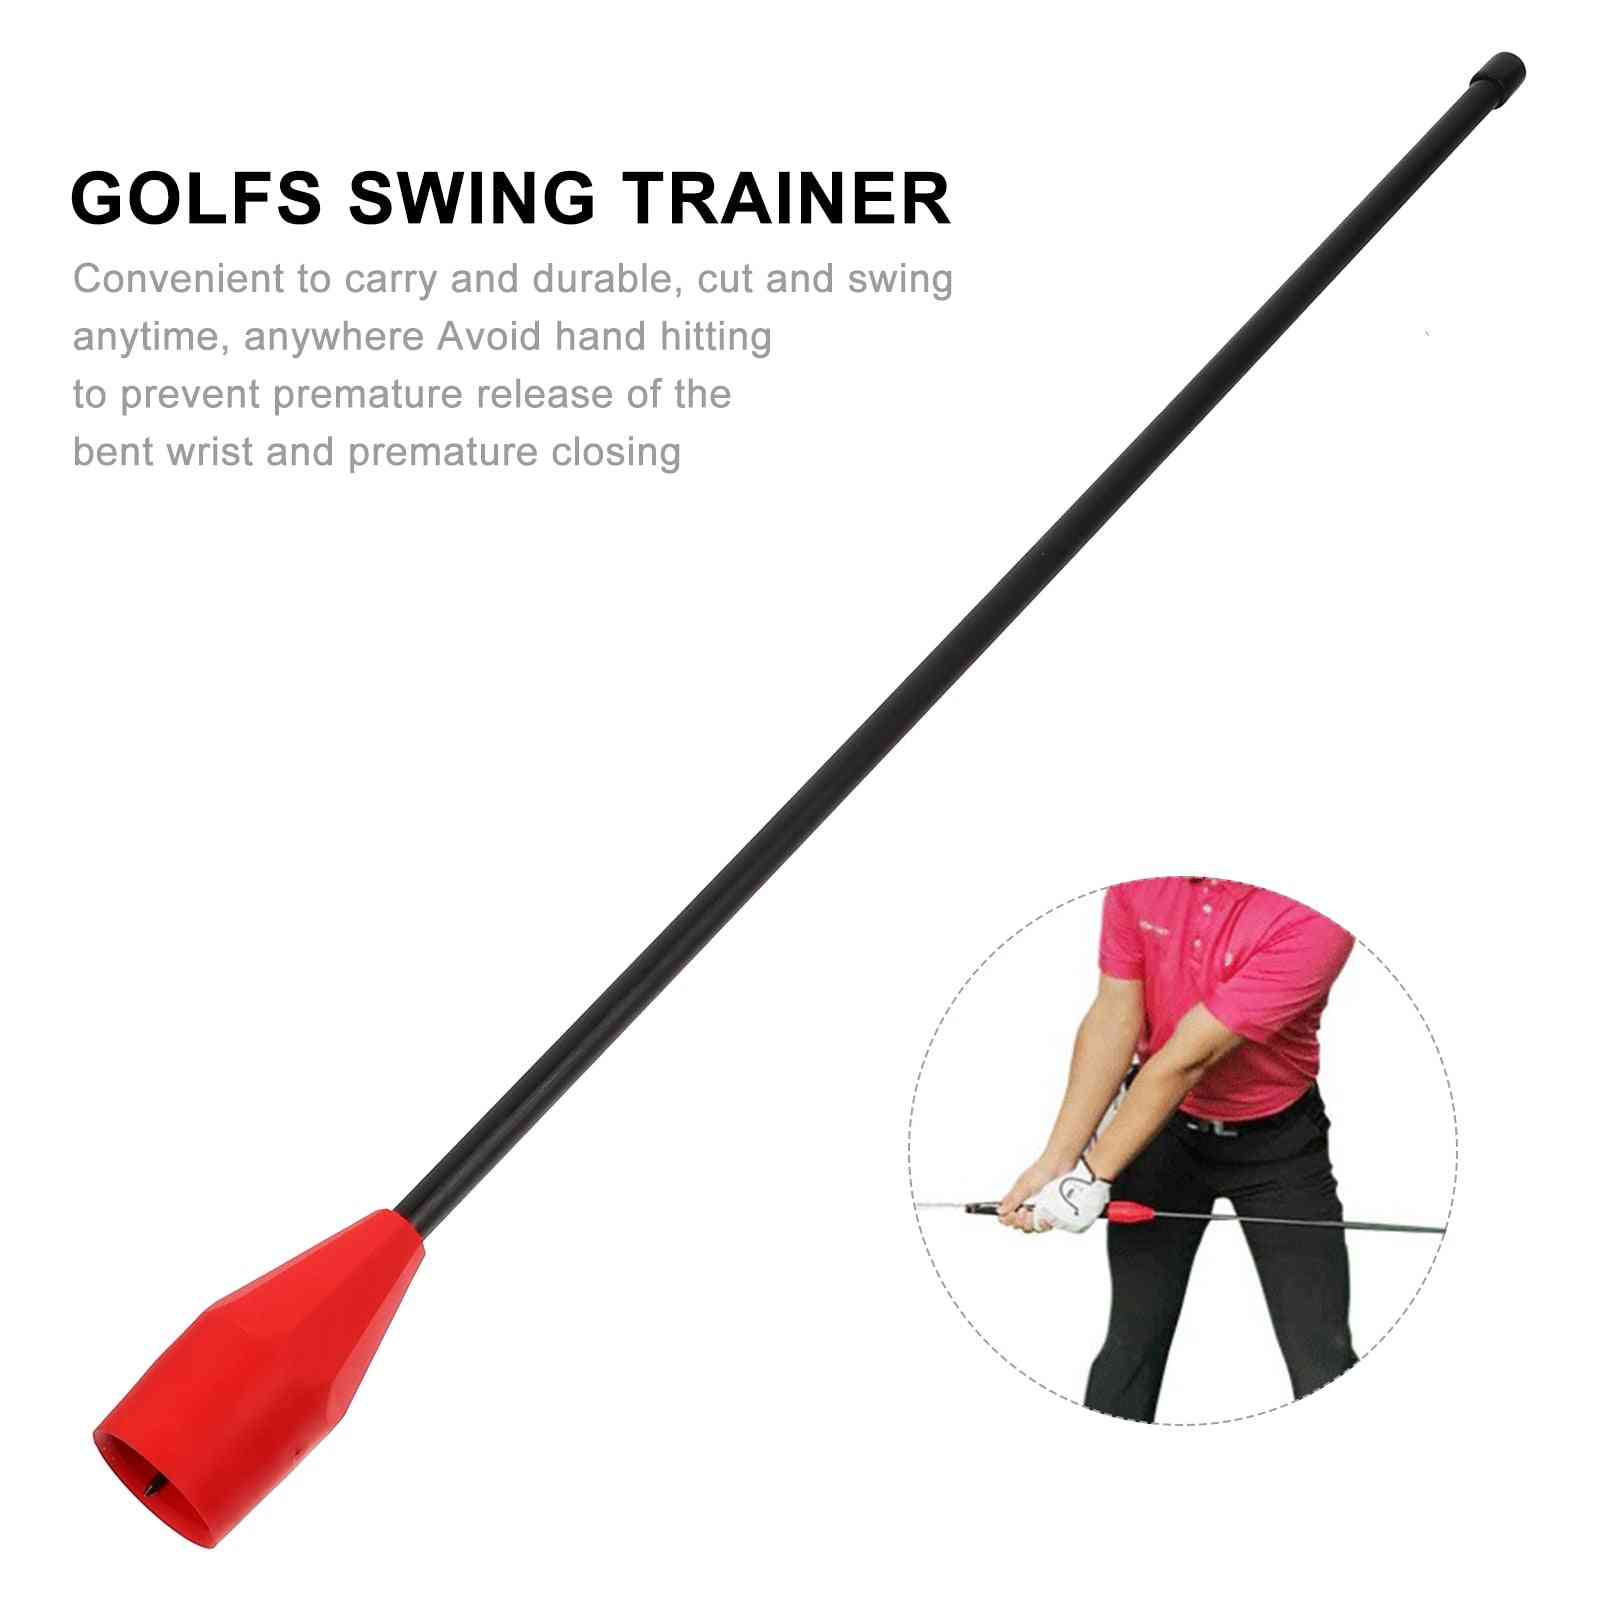 Ulkona golfien koulutustarvikkeet, swing trainer -golf-tarvikkeet